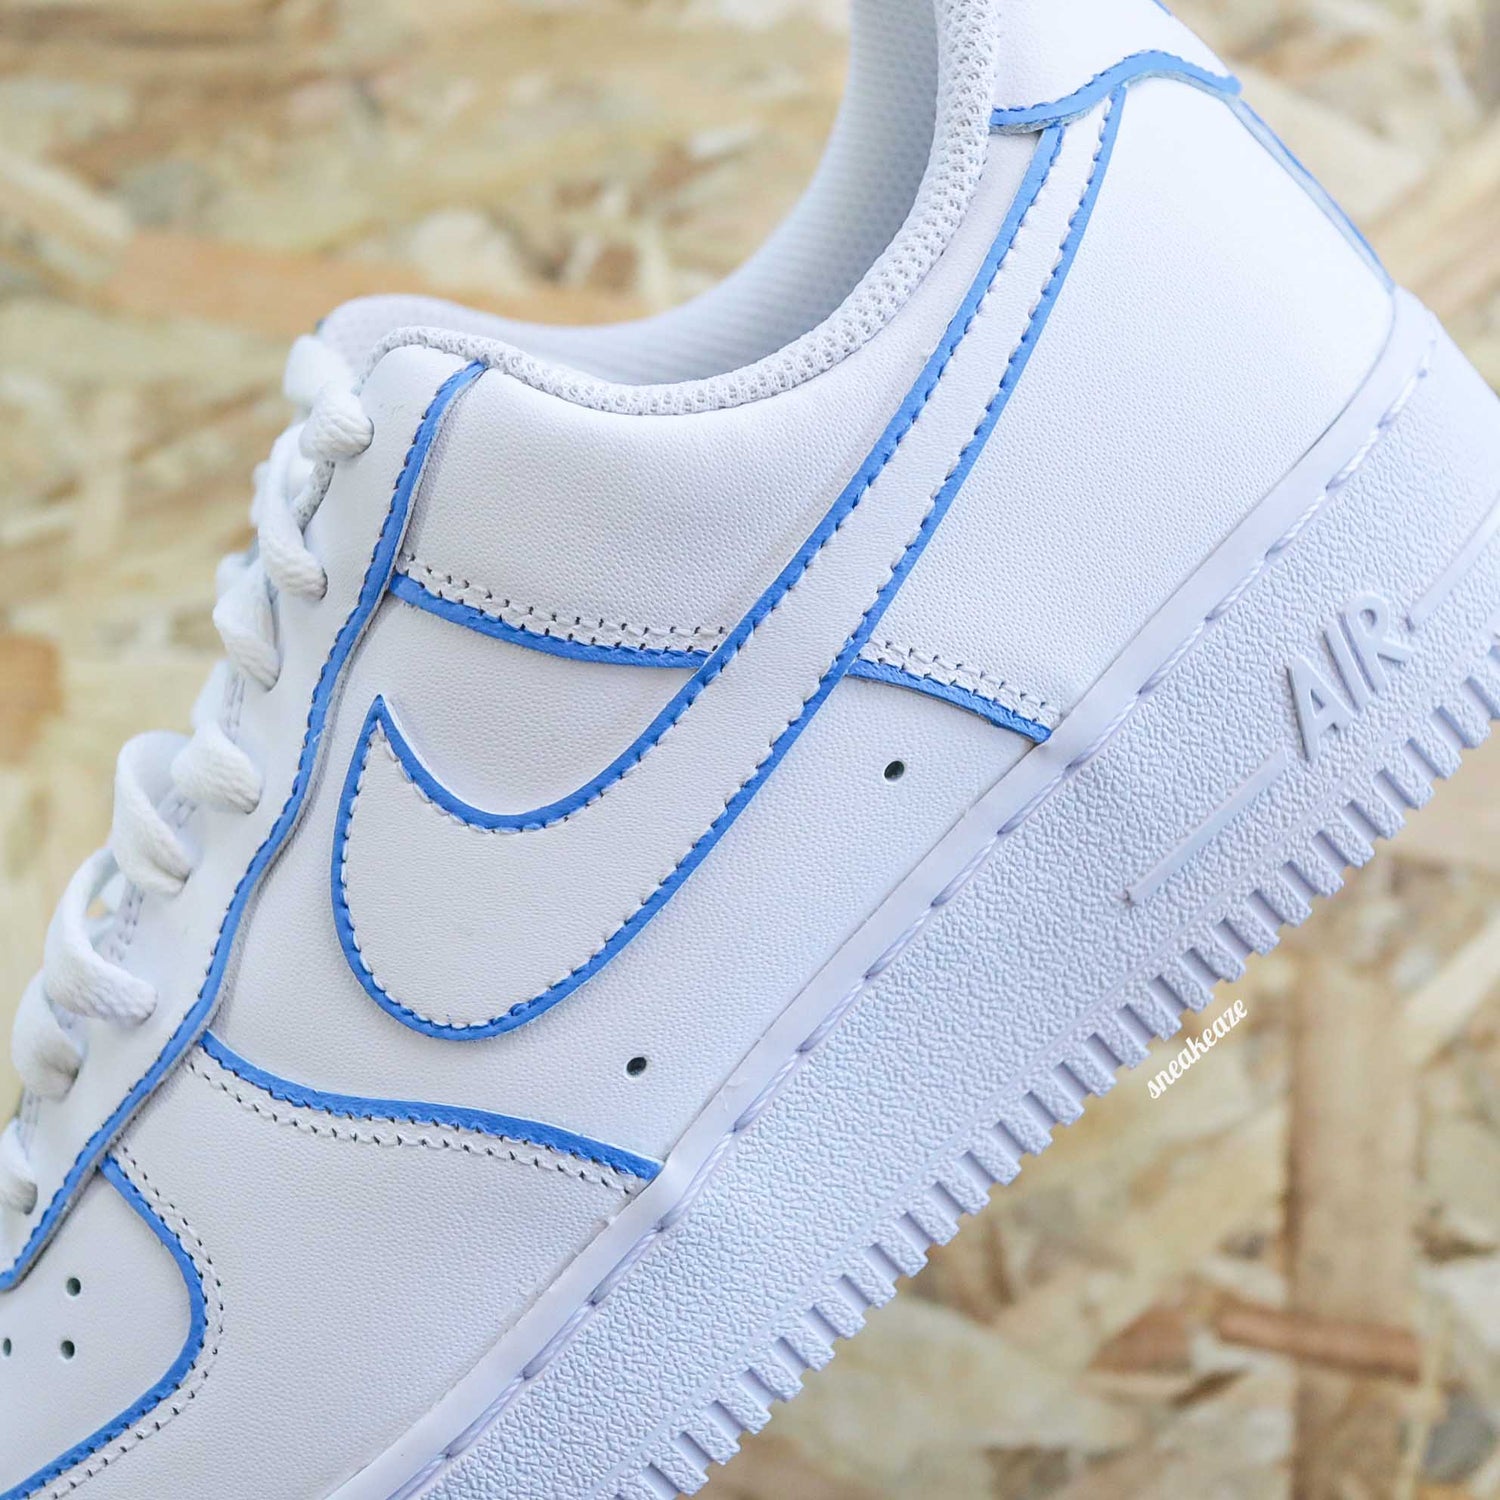 Nike Air Force 1 custom - color lines bleu af1 - SNEAKEAZE CUSTOMS skz